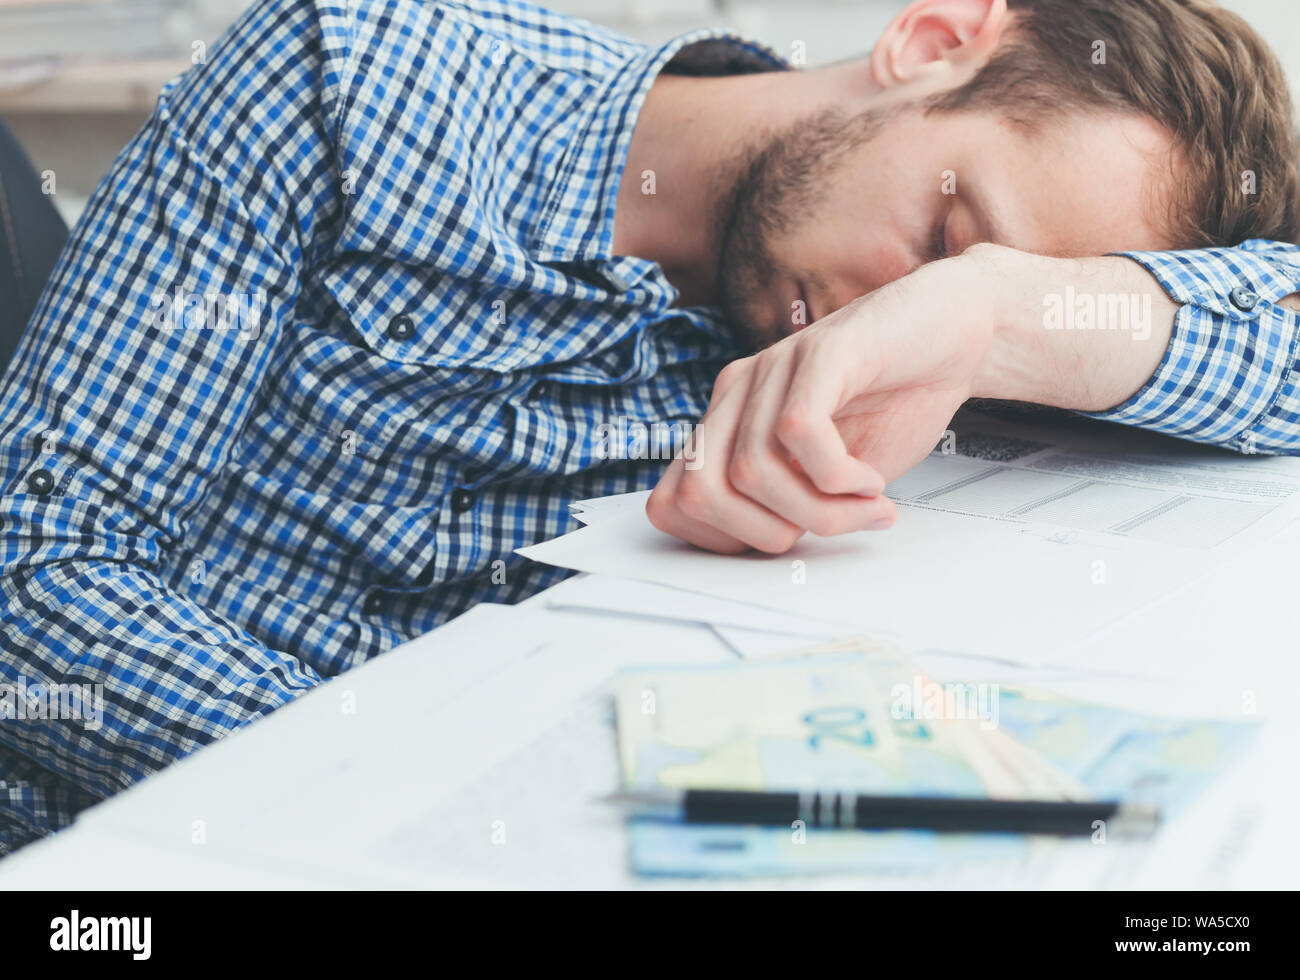 Affaticati e stanchi lavoratore di ufficio dormire oltre al lavoro sul tavolo in ufficio Foto Stock